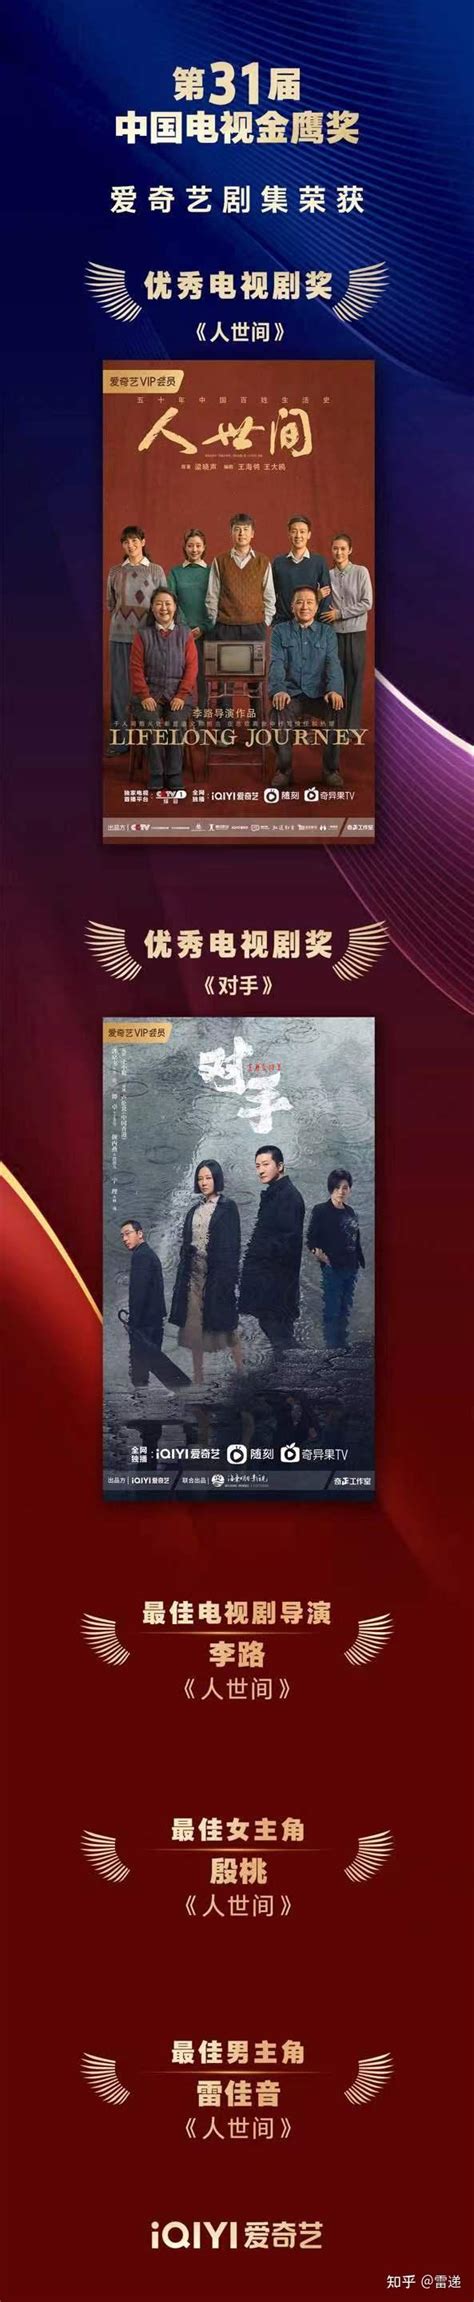 爱奇艺《人世间》《对手》获中国电视“金鹰奖”优秀电视剧奖 - 知乎